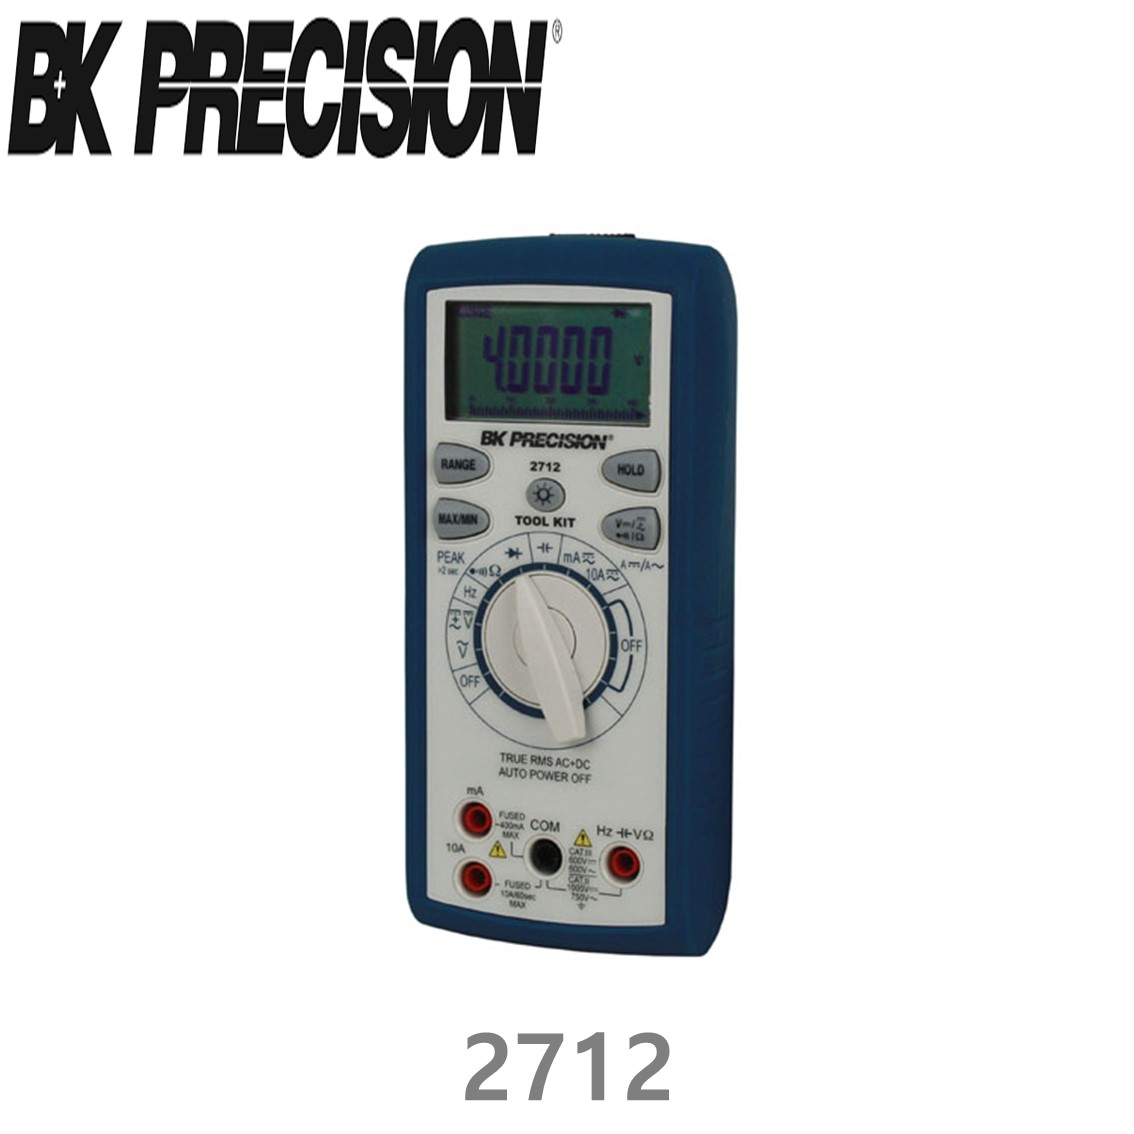 [ BK Precision ] 2705B  휴대용 디지탈 멀티미터 자동 범위 지정 DC ~1000V/AC ~750V